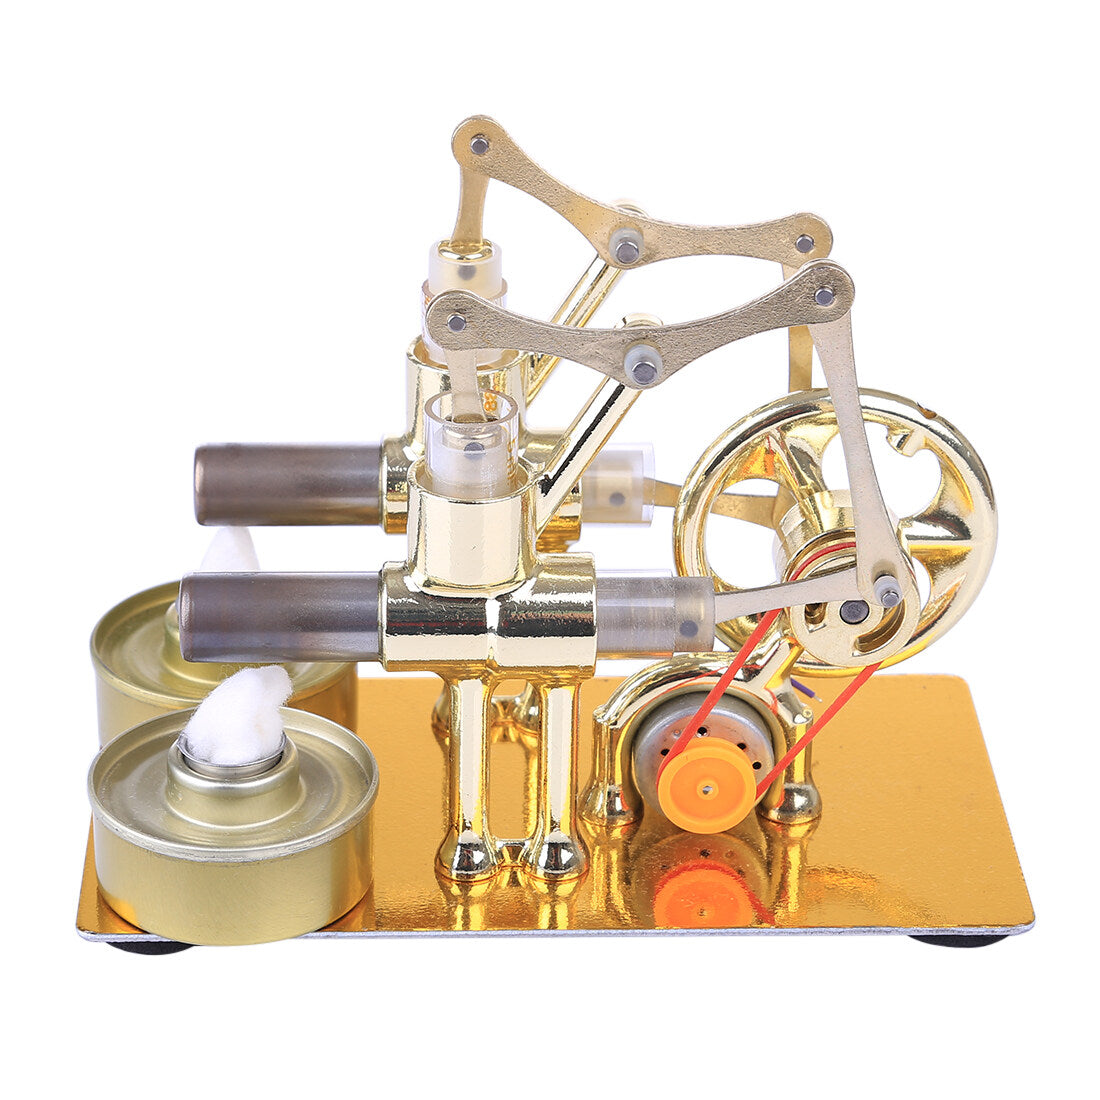 2 Cylinder Stirling Engine Electricity Generator with Bulb Stirling Engine Motor Model enginediyshop